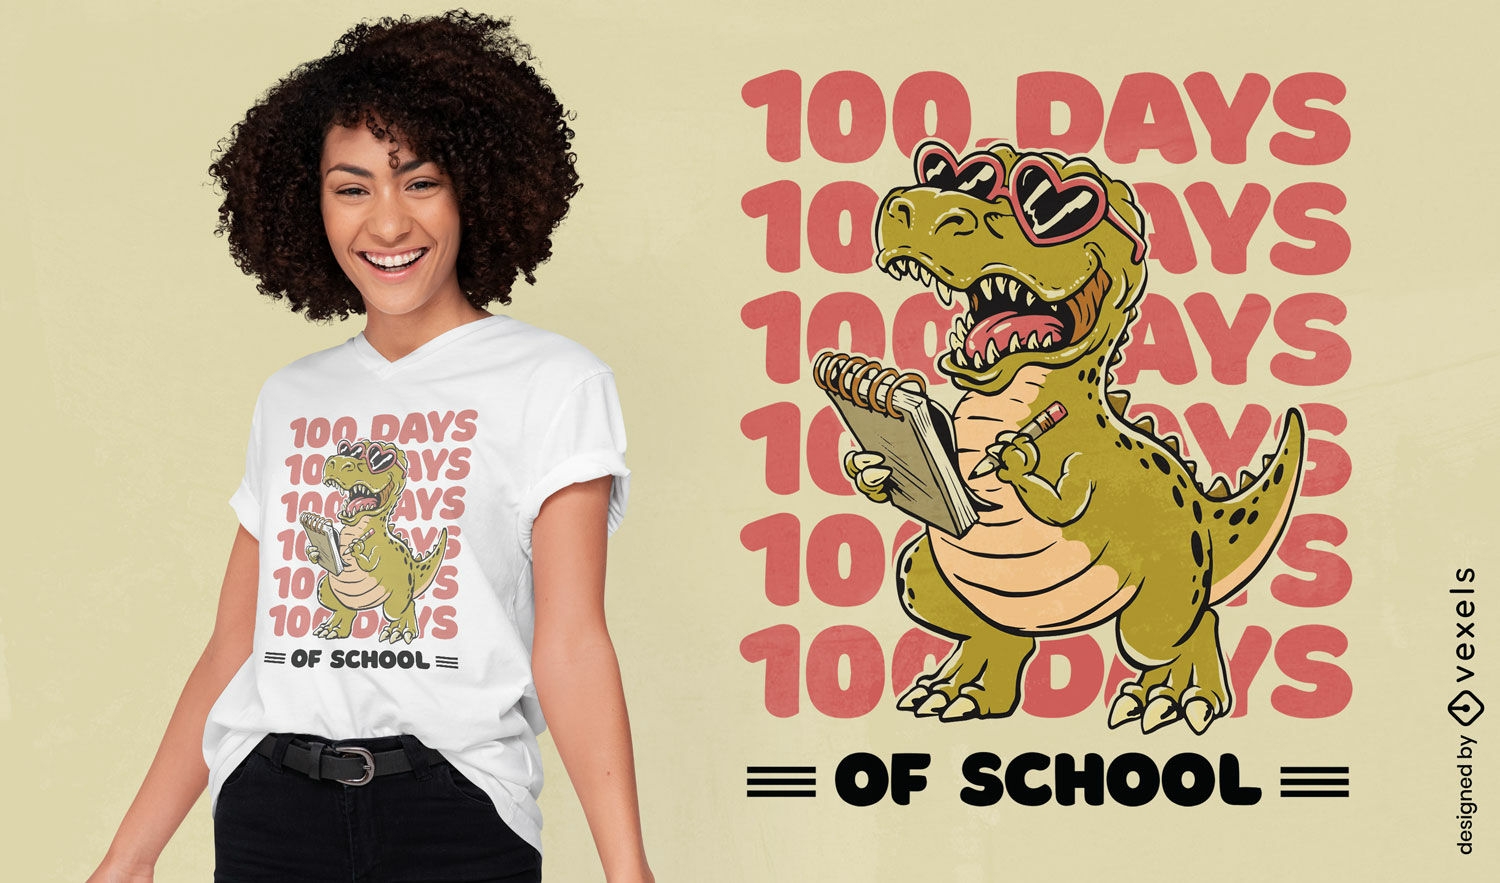 T-rex 100 days of school t-shirt design